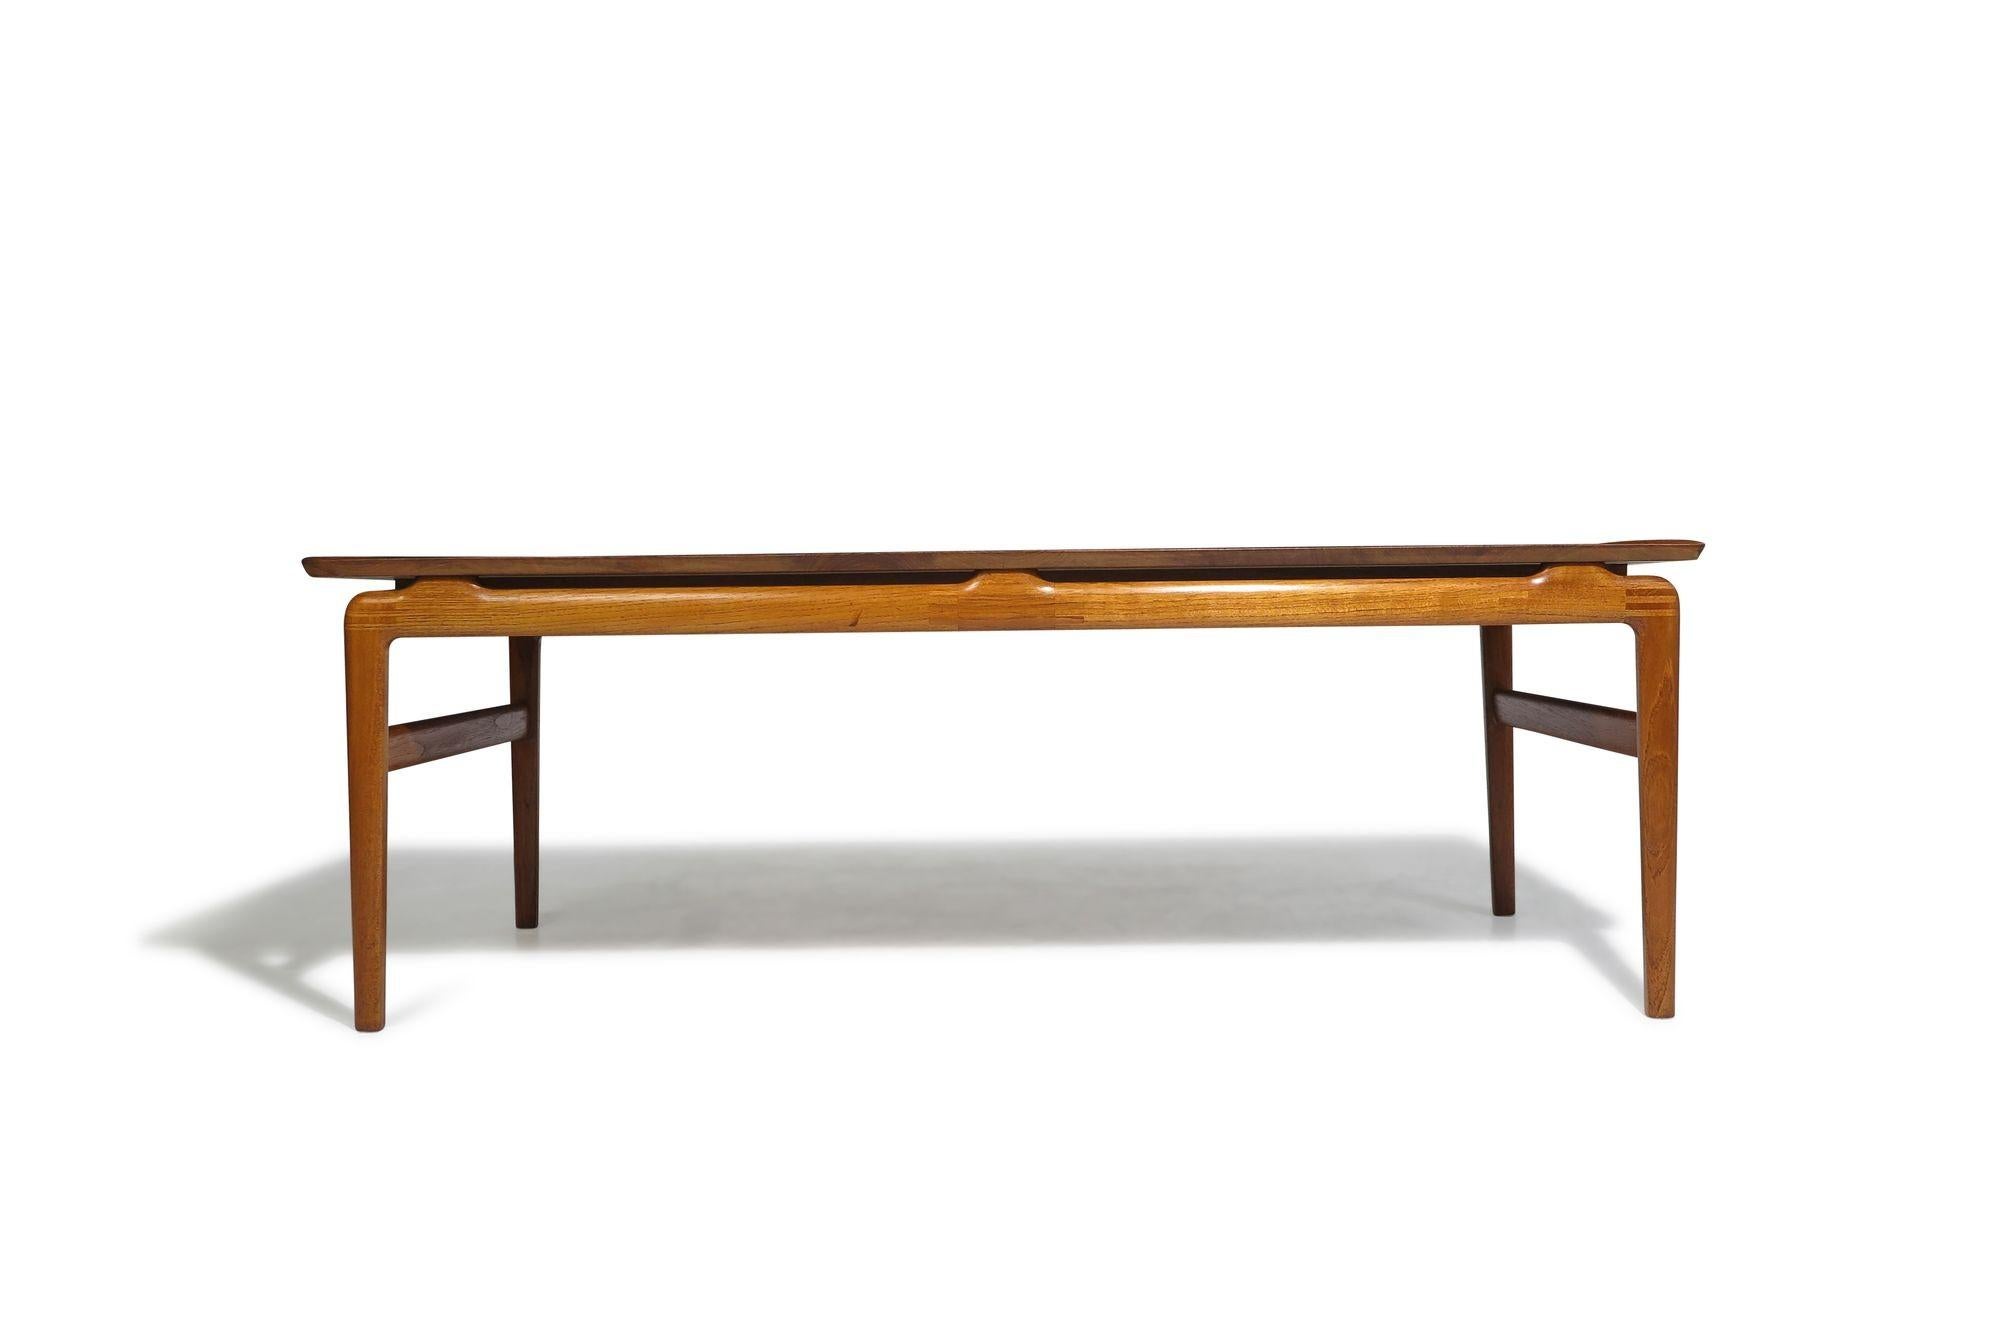 Table basse en teck massif conçue par Peter Hvidt & Orla Molgaard Nielsen pour France & Son, modèle 640, 1958 Danemark. Fabriqué à partir de planches de teck ancien, avec une menuiserie apparente sur les pieds et le tablier. Restauré